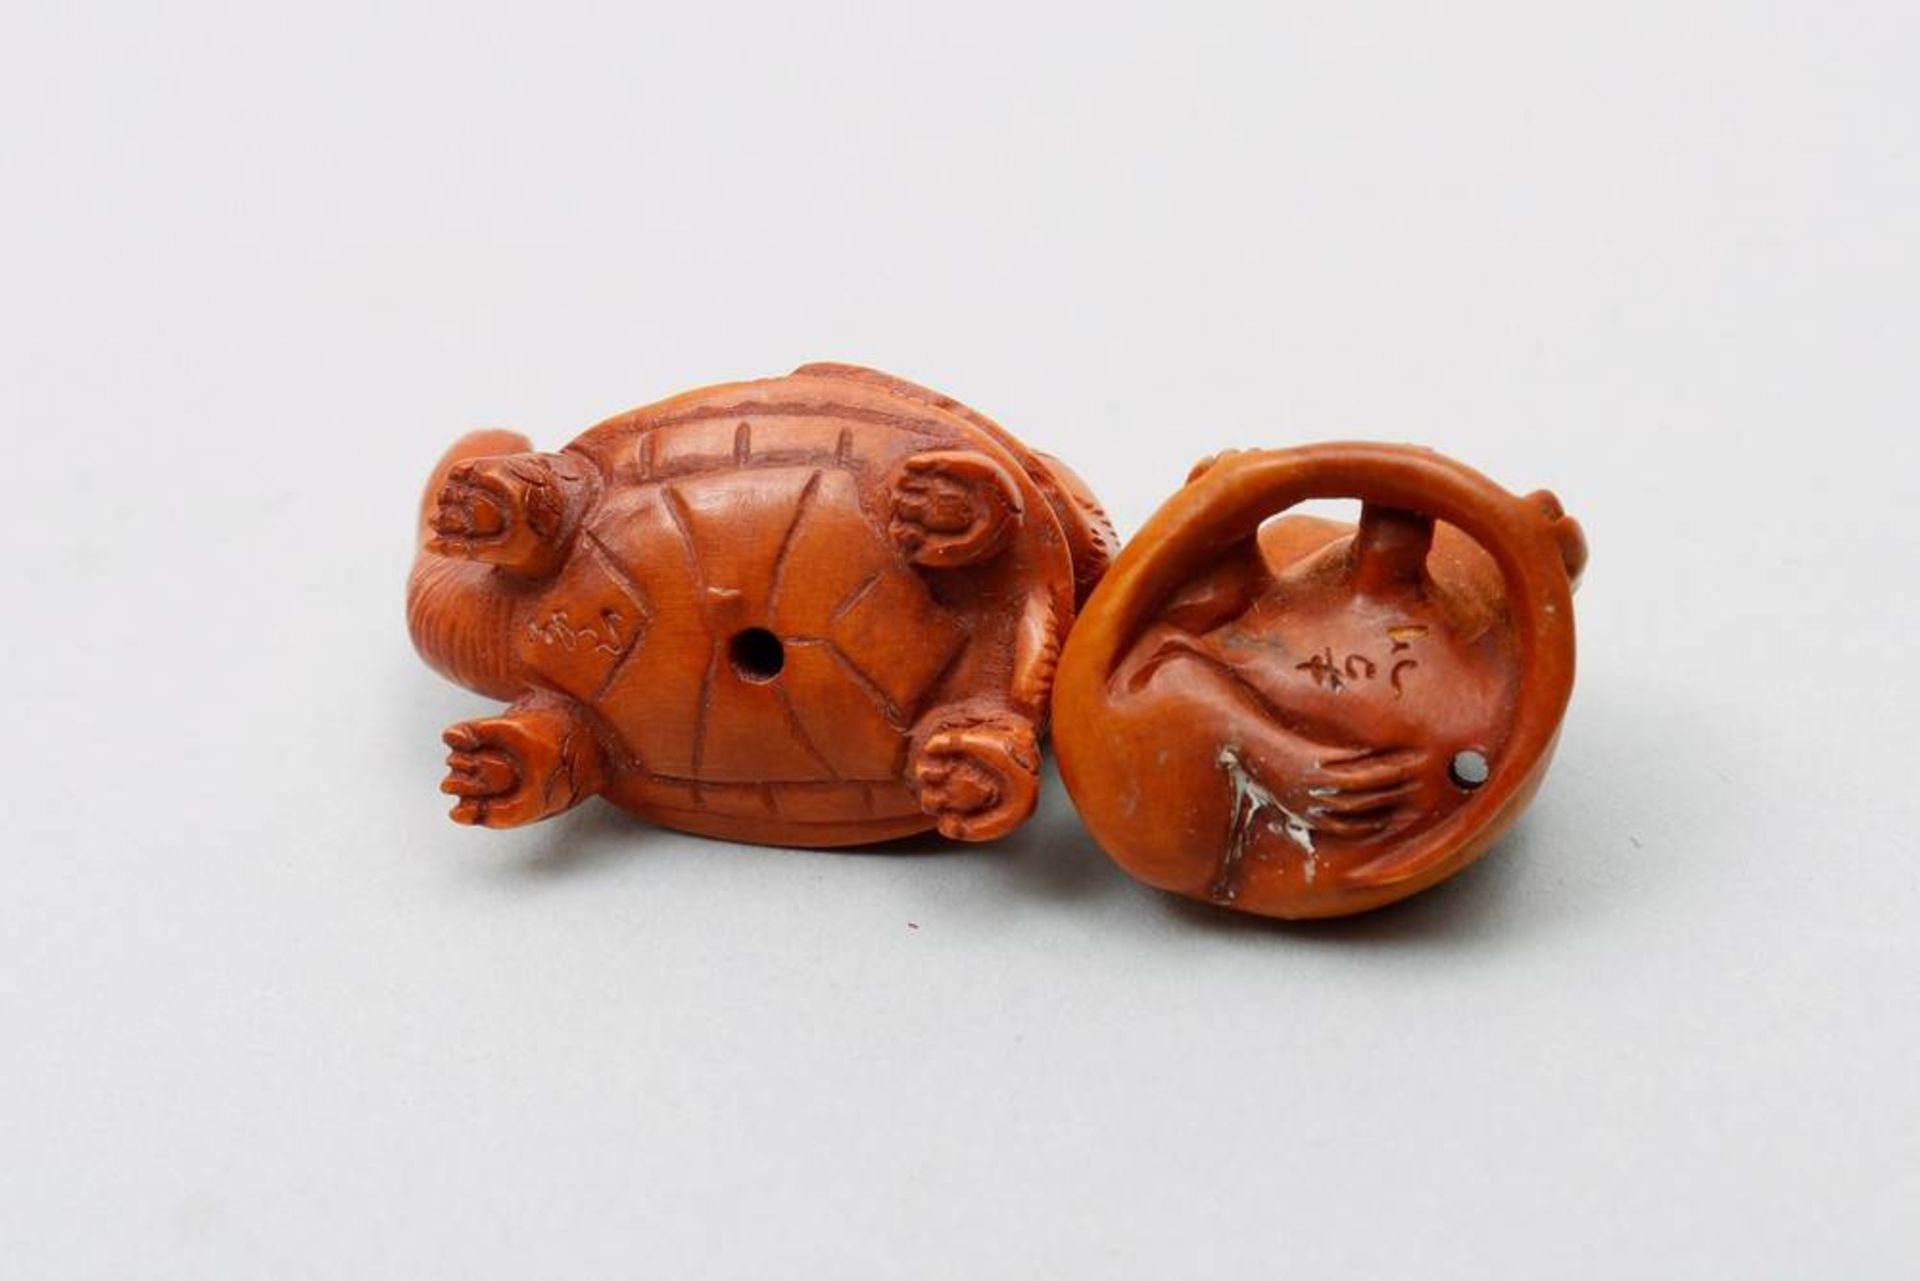 2 Ojime wohl Japan, um 1900/20, sitzende Ratte mit Glasaugen und Tiger auf einer Schildkröte - Bild 4 aus 4